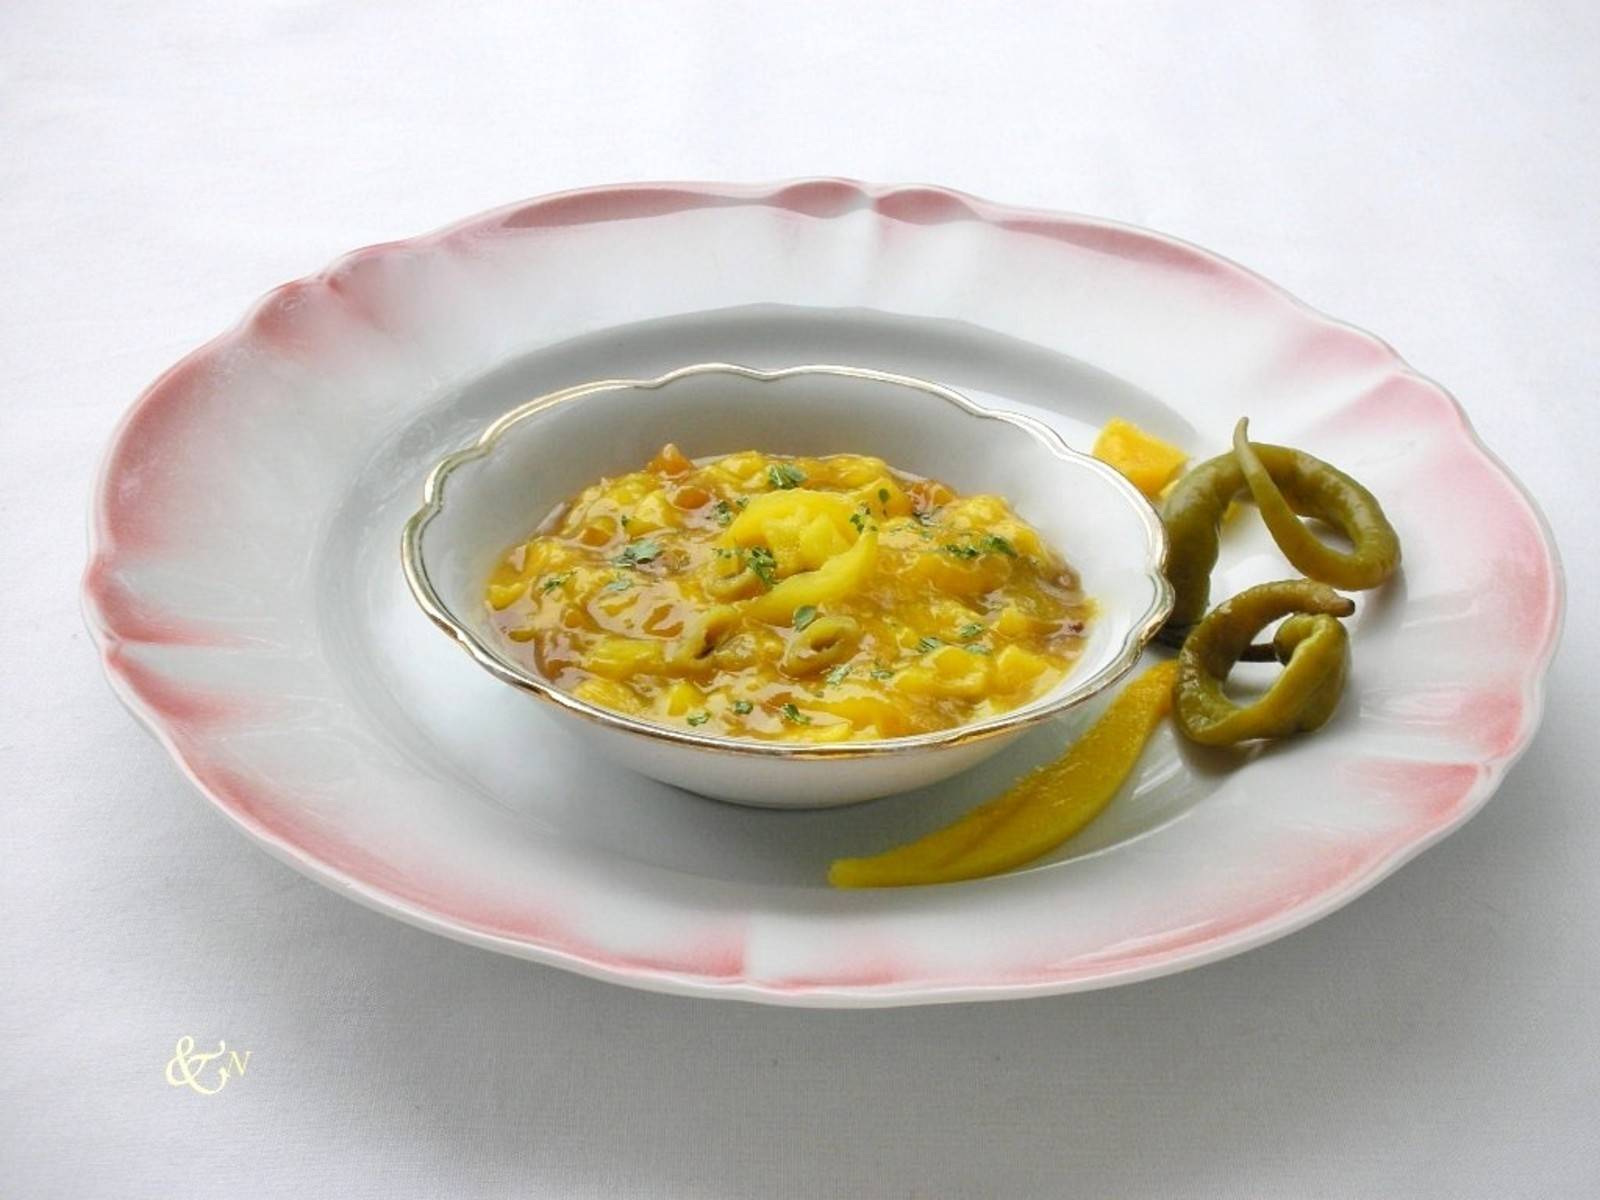 Scharfer Curry-Mango-Dip